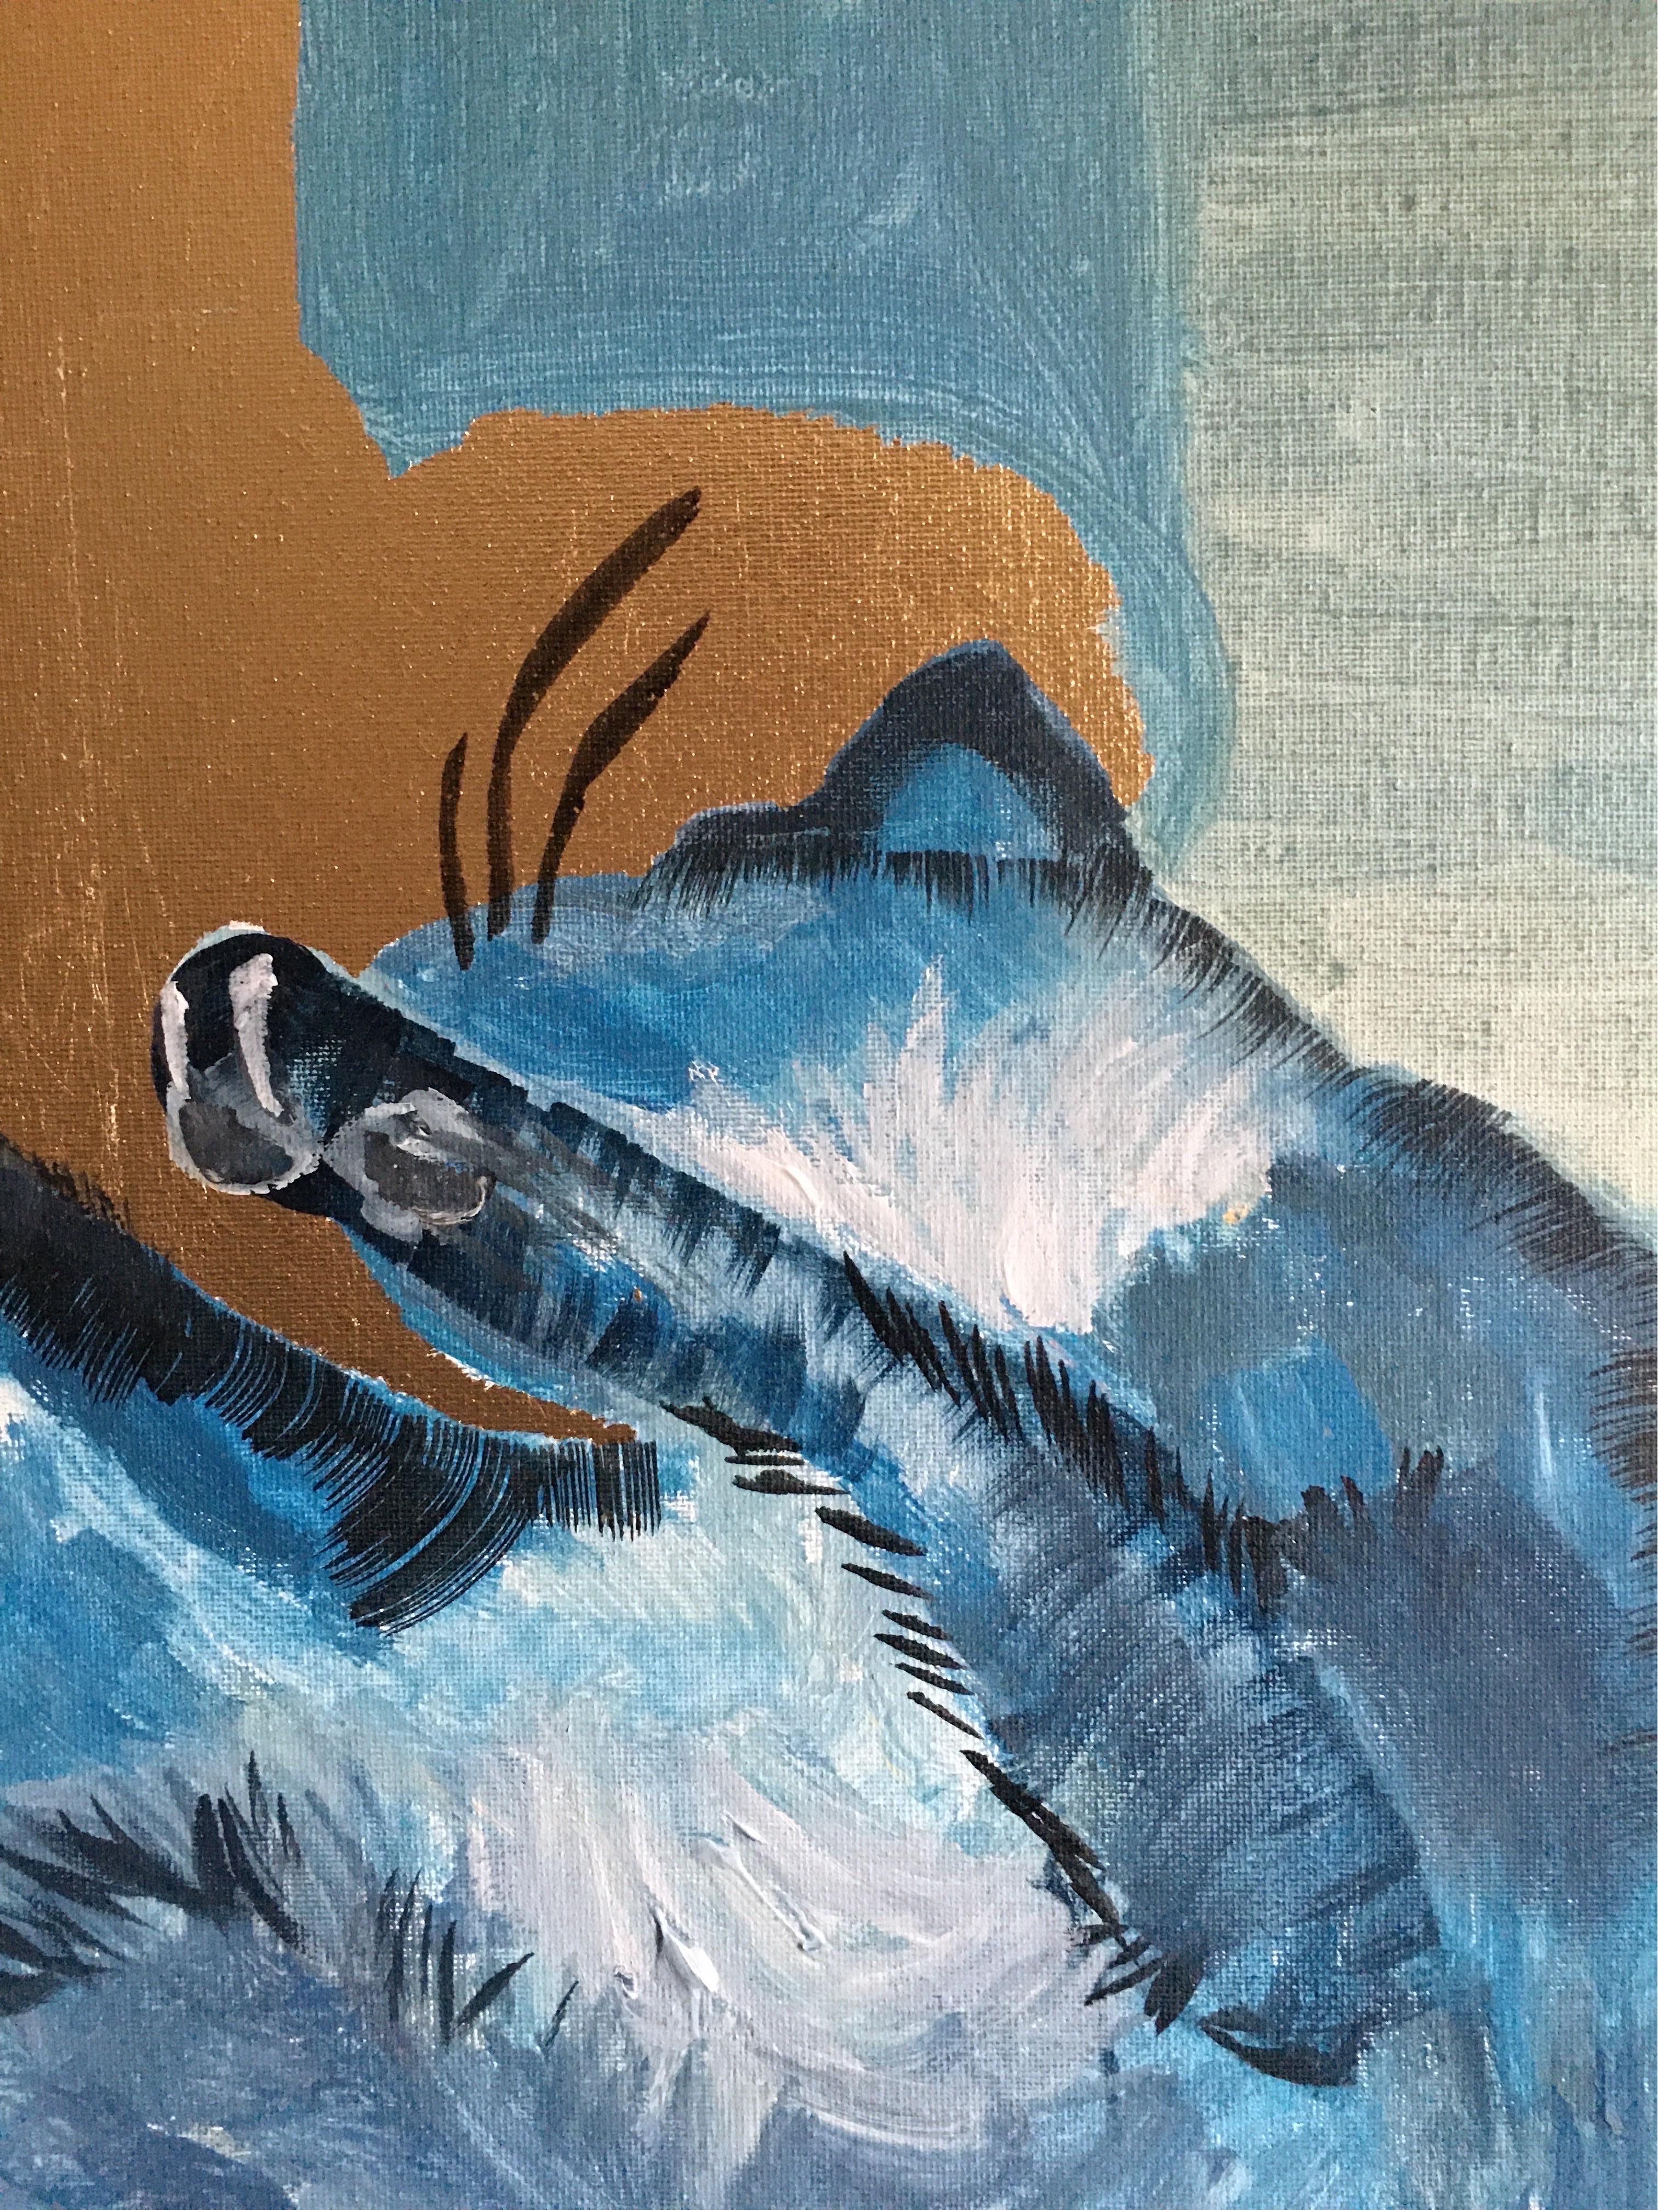 Original-Primary Blue-Cat-Expression-Goldblatt-UK ausgezeichneter Künstler (Abstrakter Expressionismus), Painting, von Shizico Yi